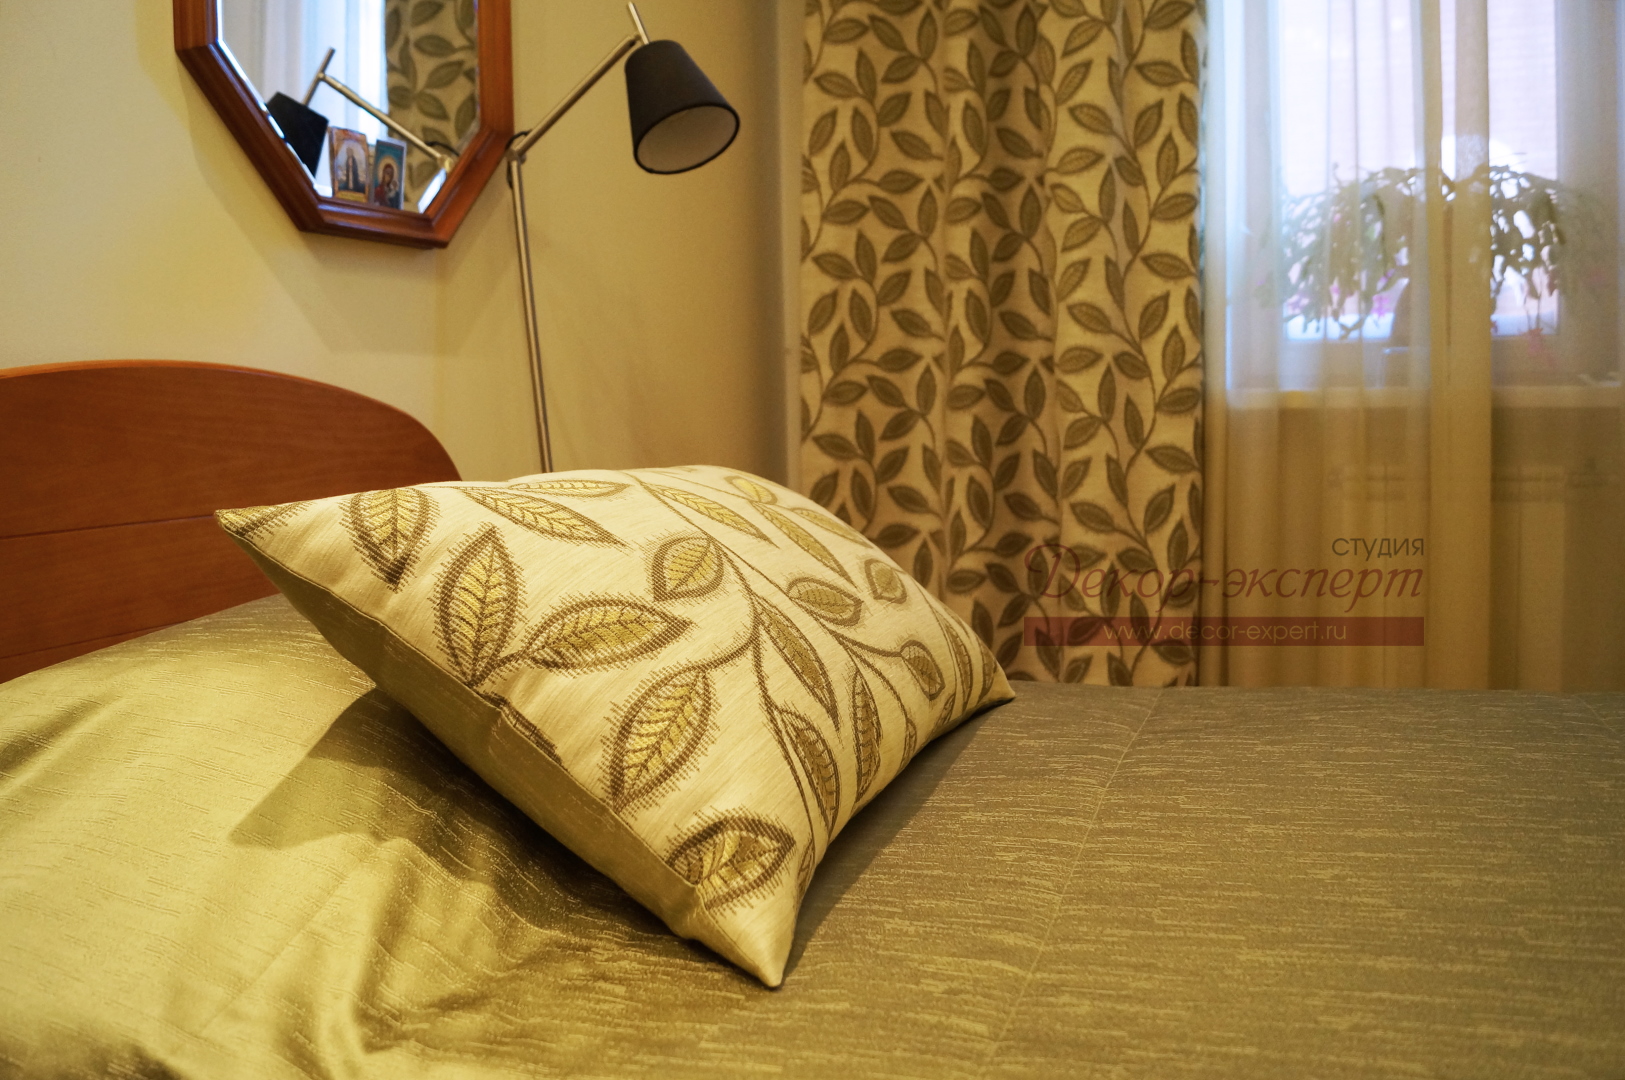 Декоративная подушка и фрагмент покрывала на кровати в комнате мамы.